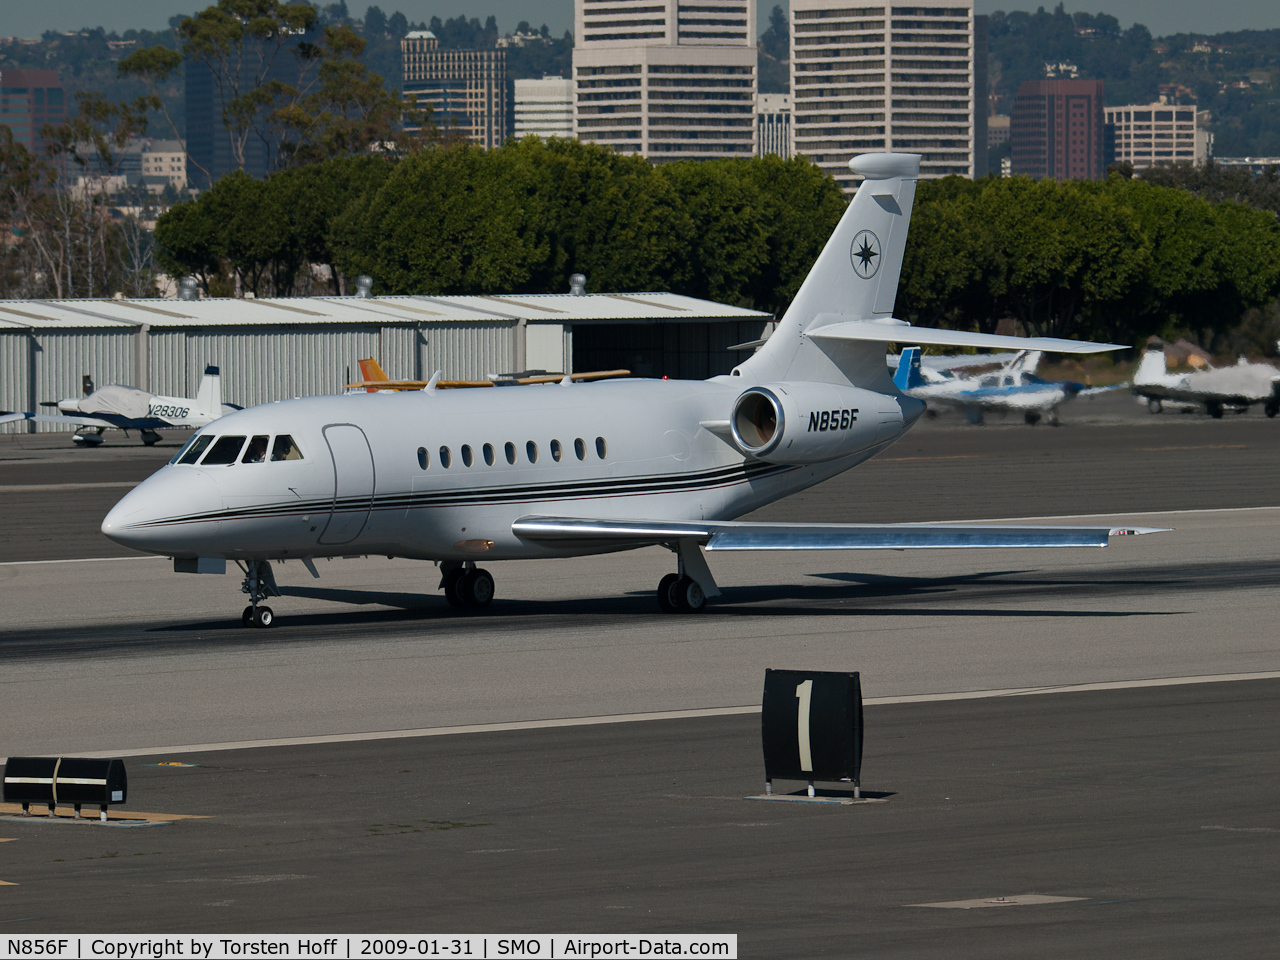 N856F, 2001 Dassault Falcon 2000 C/N 138, N856F departing from RWY 21